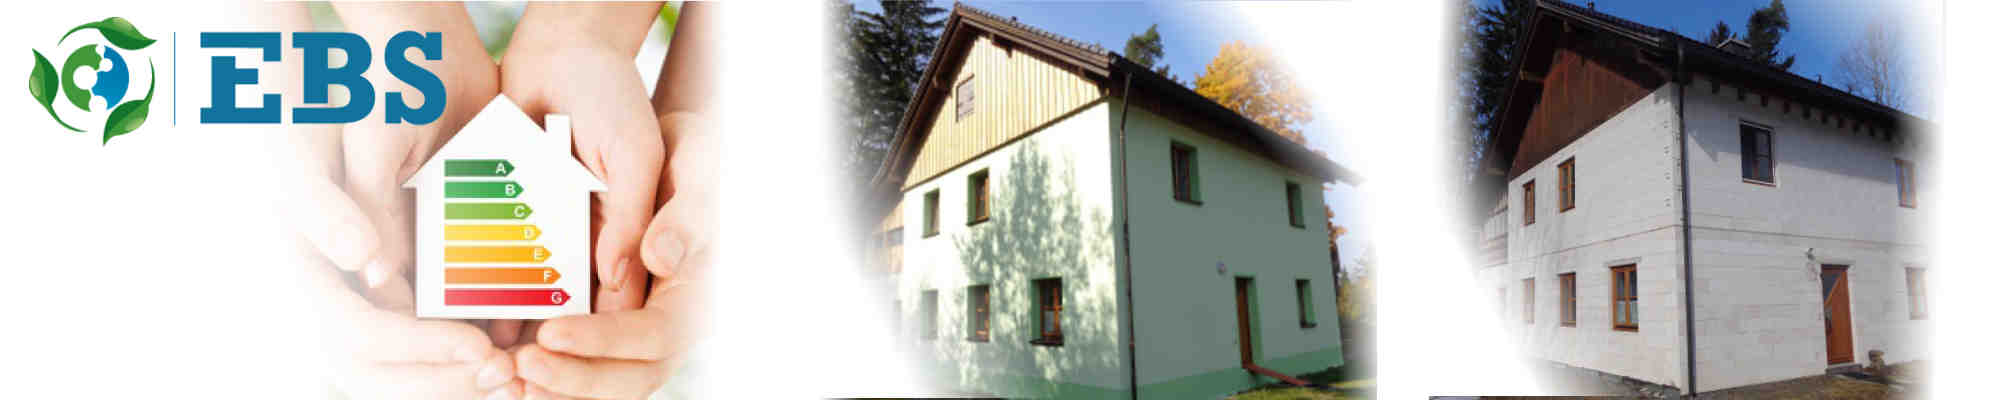 Gebäudesanierung Wohngebäude in Hof, Nürnberg, Bayreuth, Selb Fürth